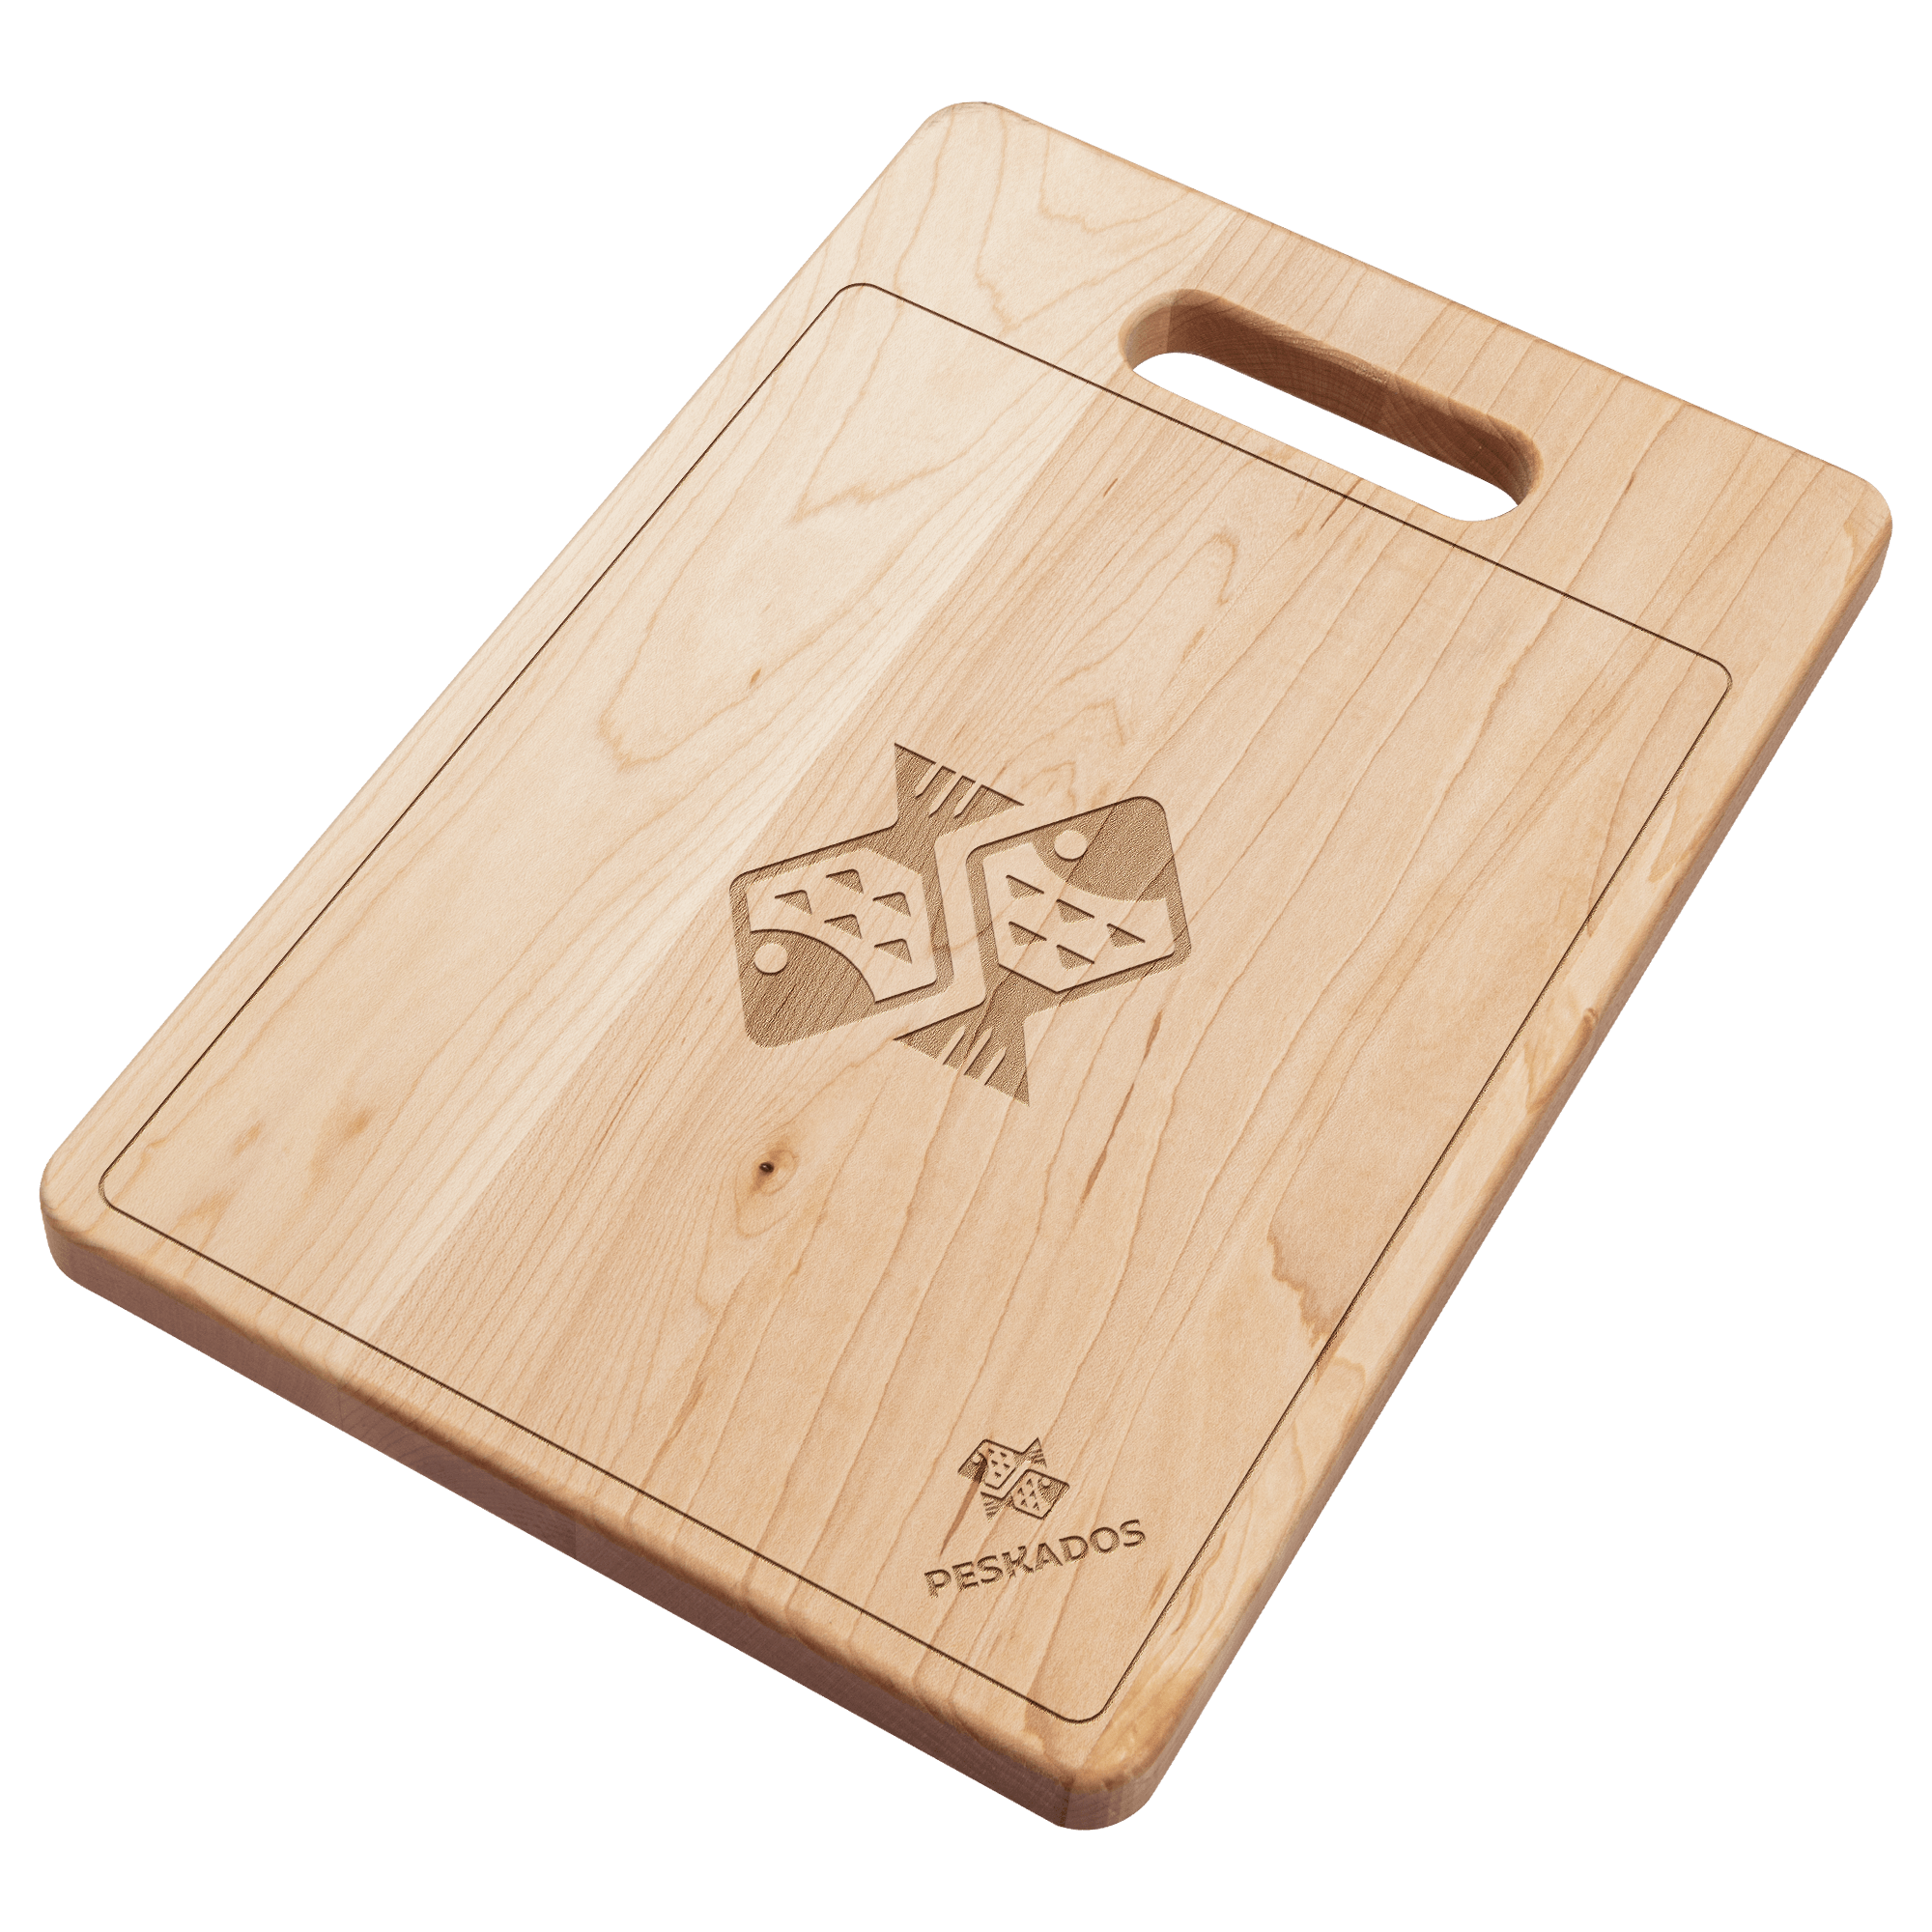 Peskados Maple Wood Cutting Board